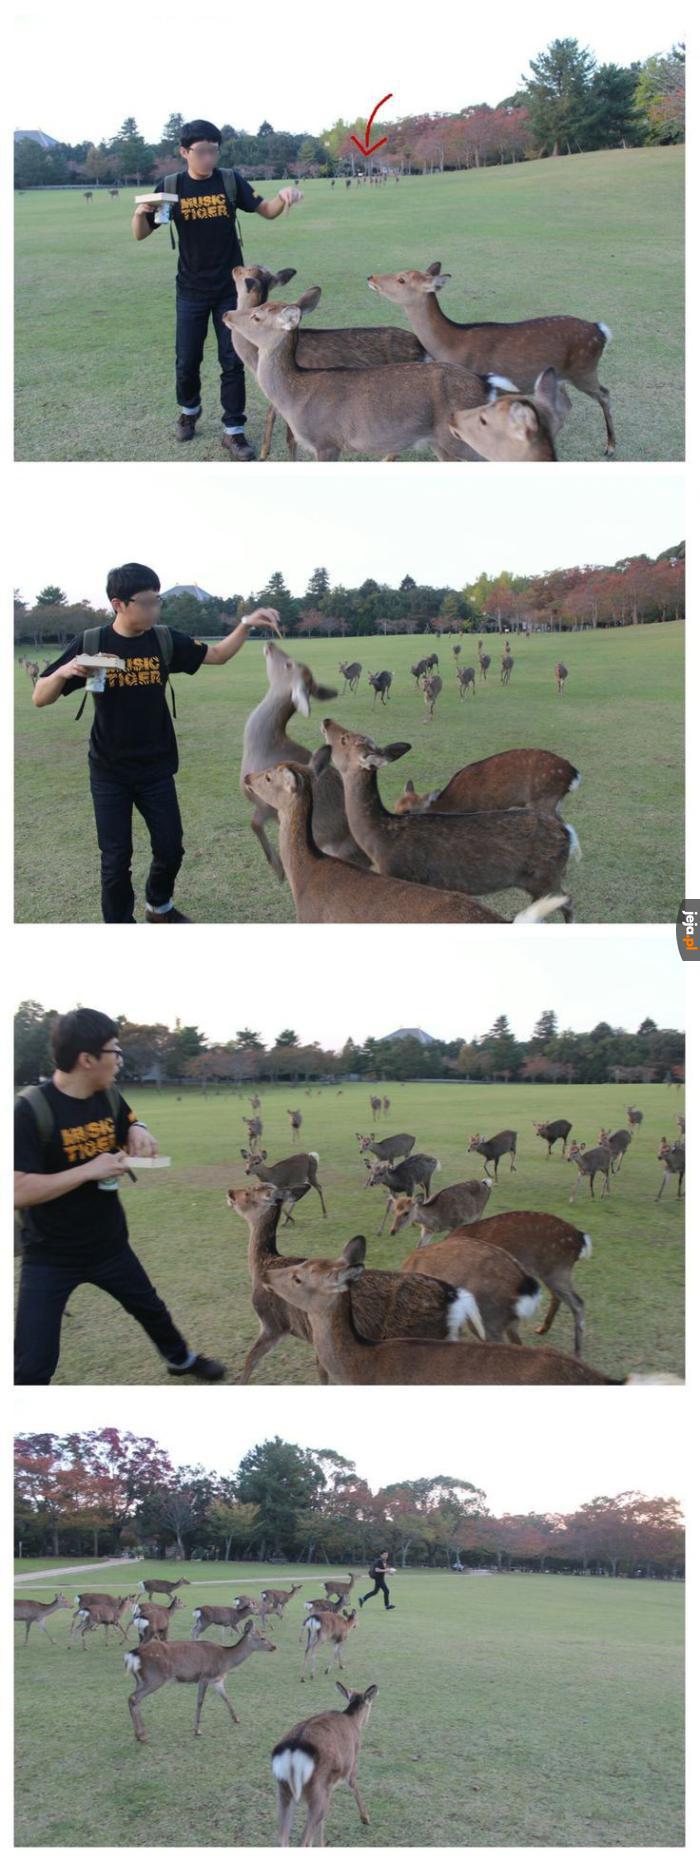 Oh deer!